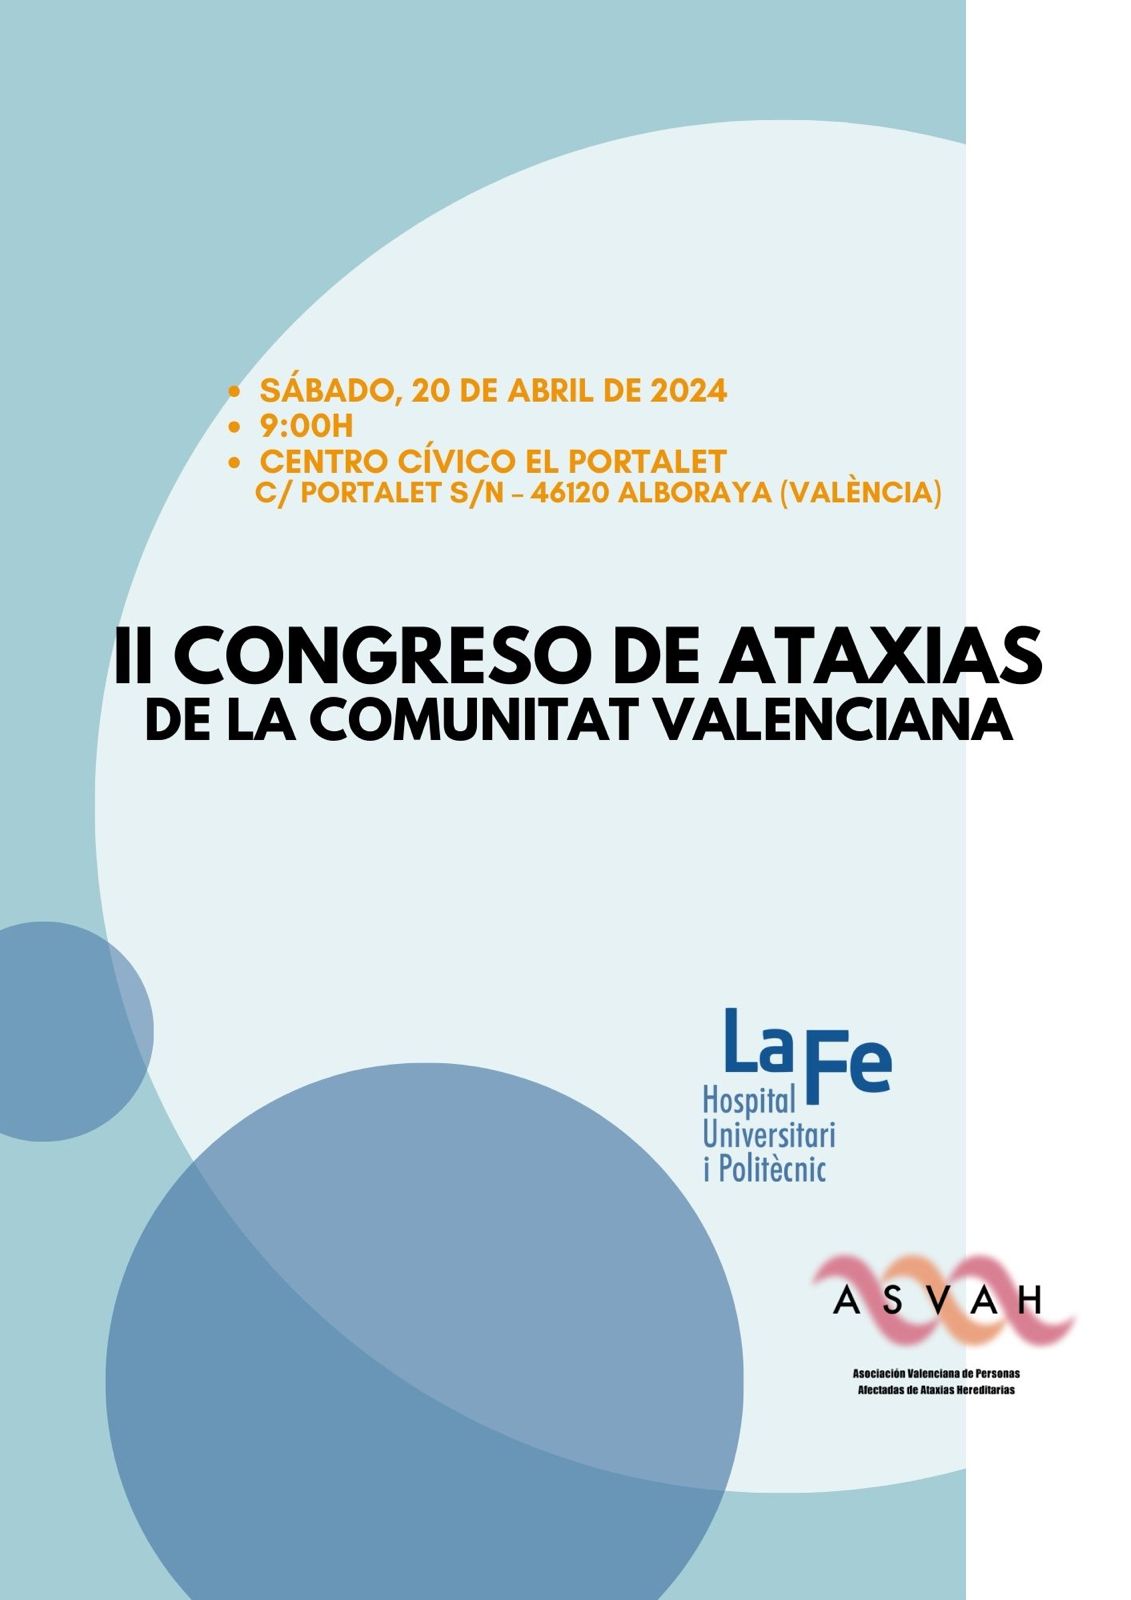 II Congreso de Ataxias de la Comunidad Valenciana